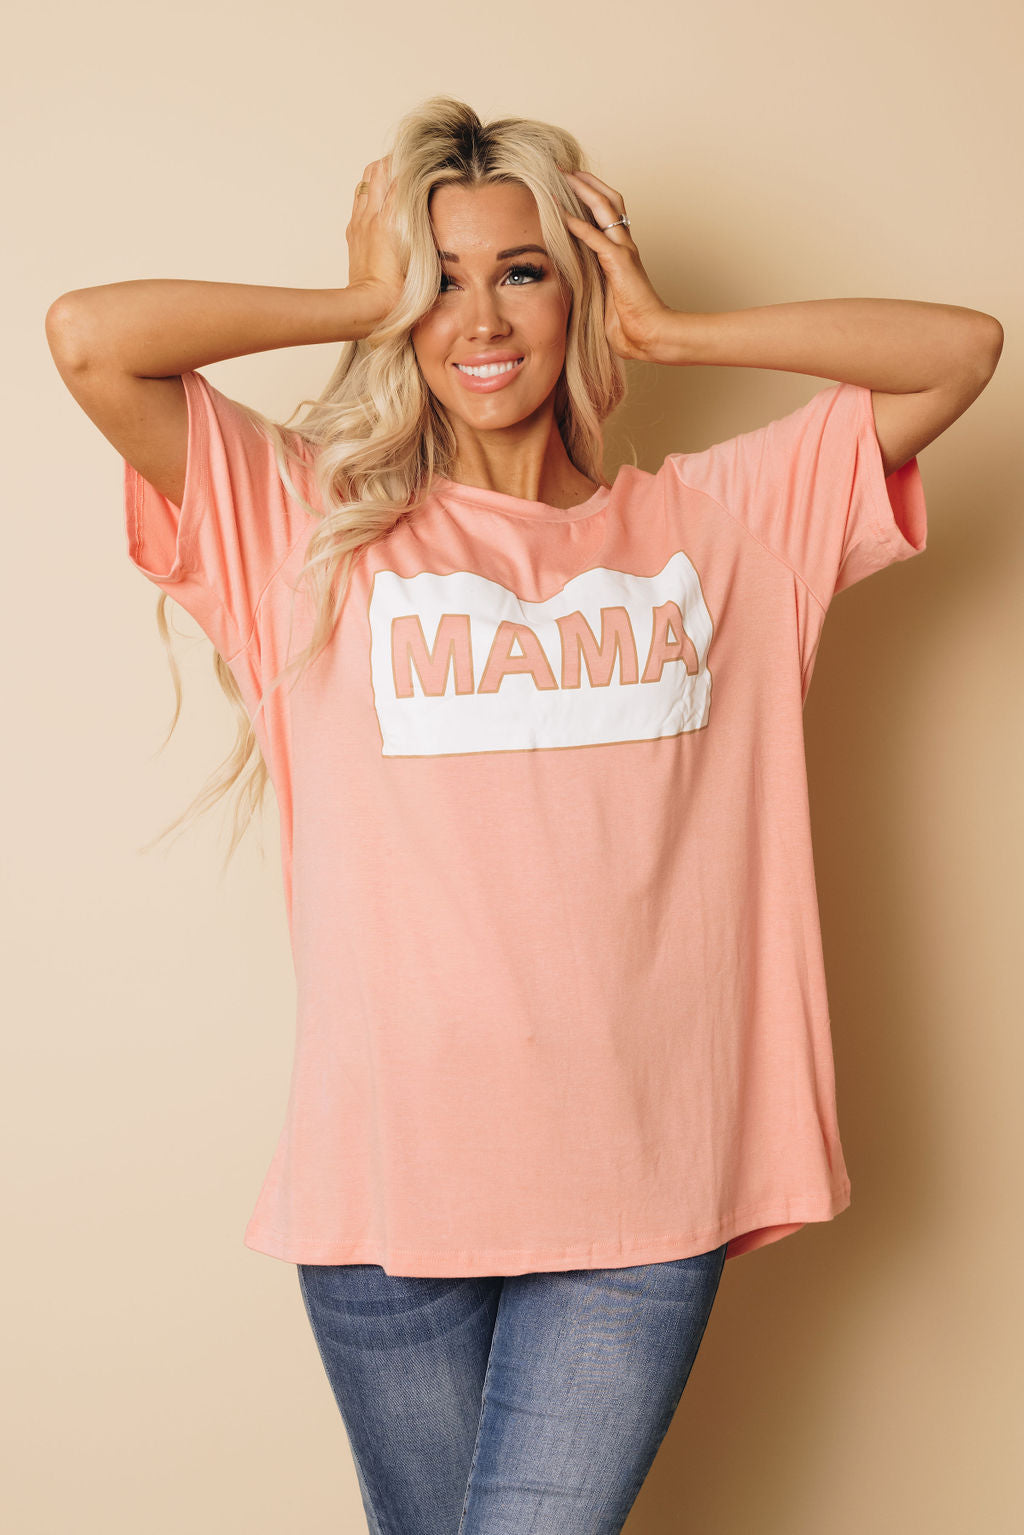 Mama Plus Size T-Shirt